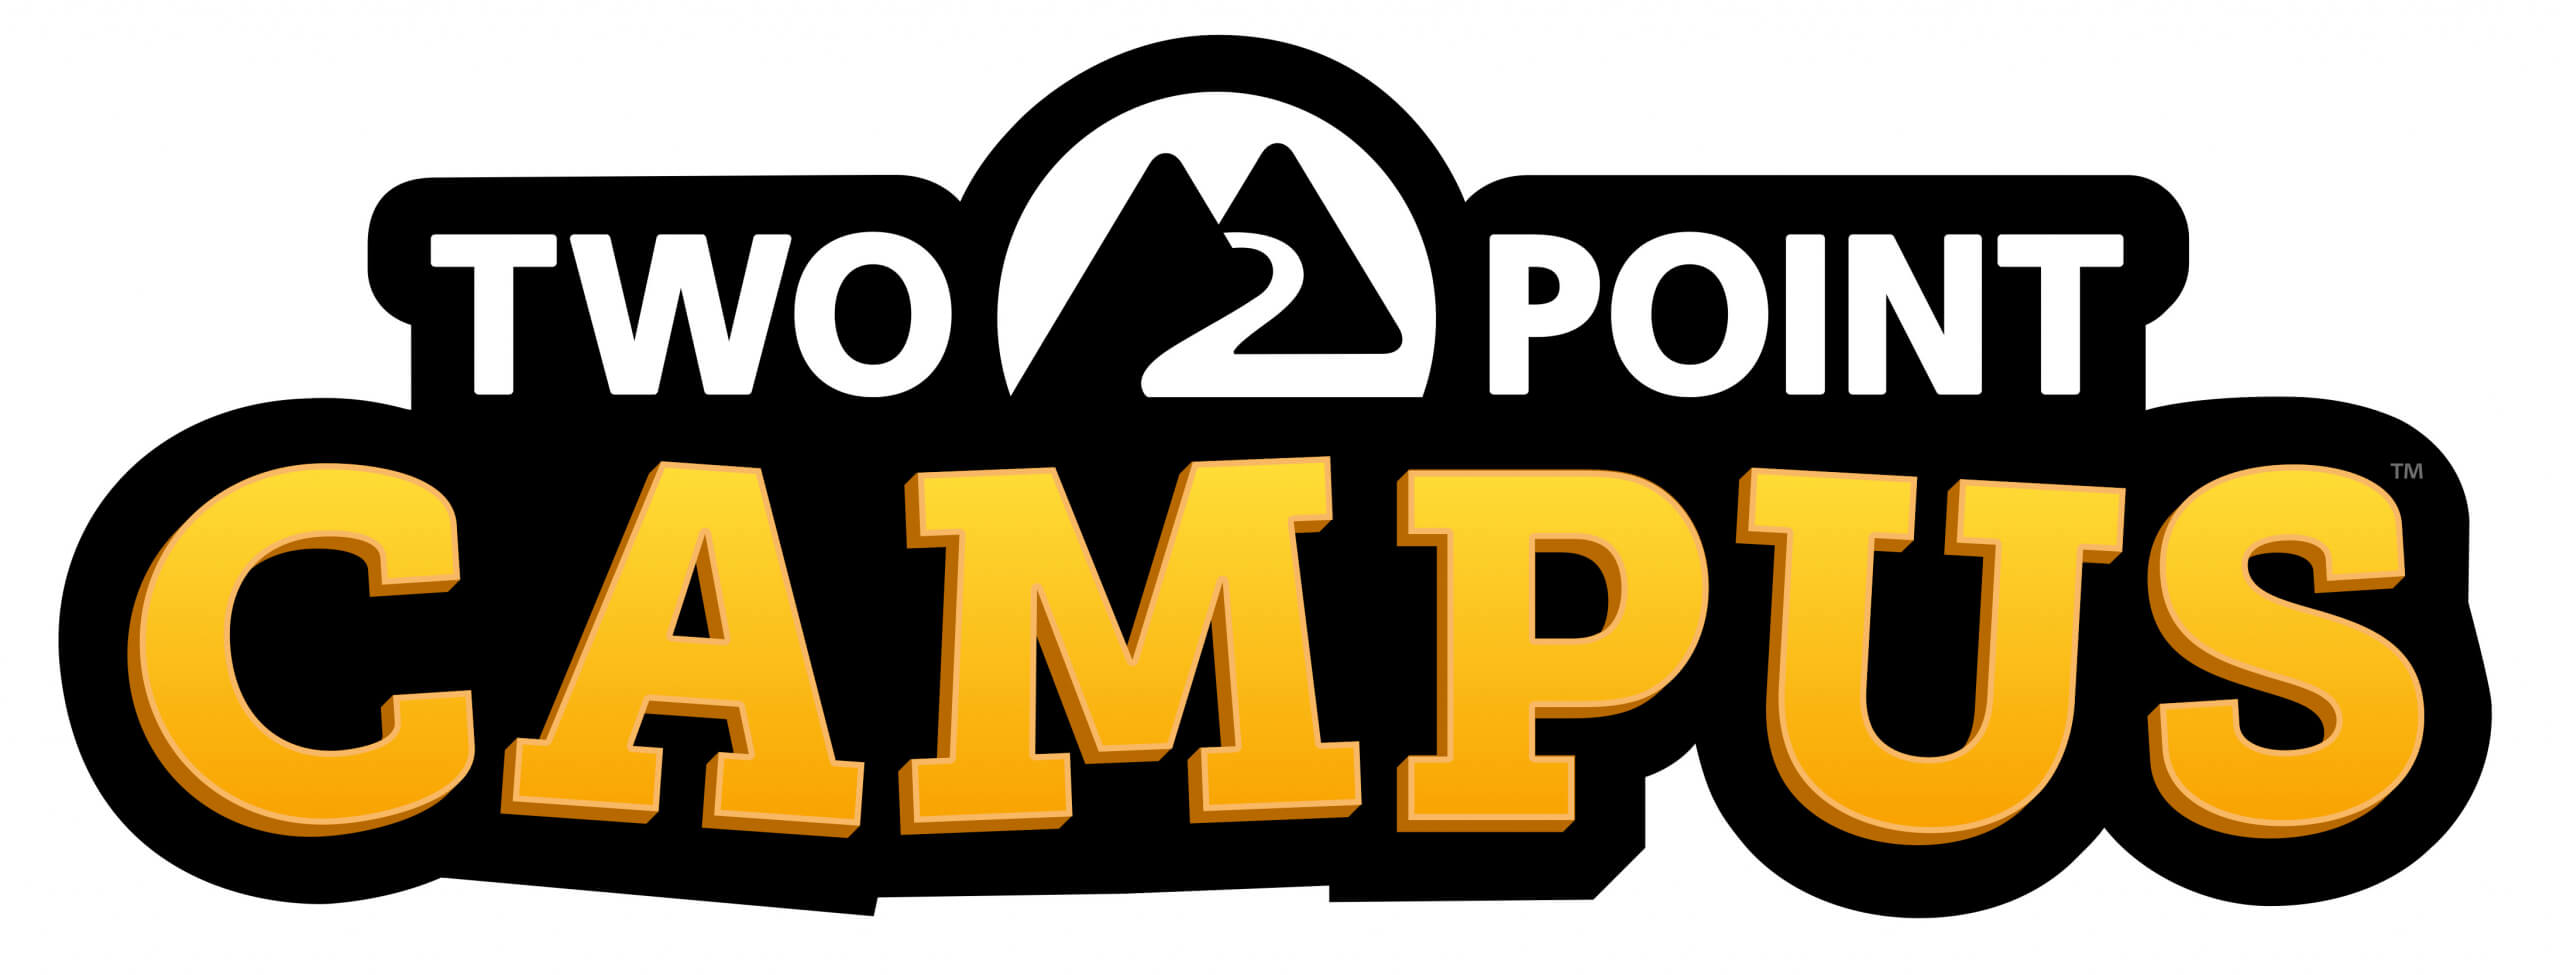 #TwoPointCampus fait sa rentrée avec une bande-annonce festive pour son lancement !